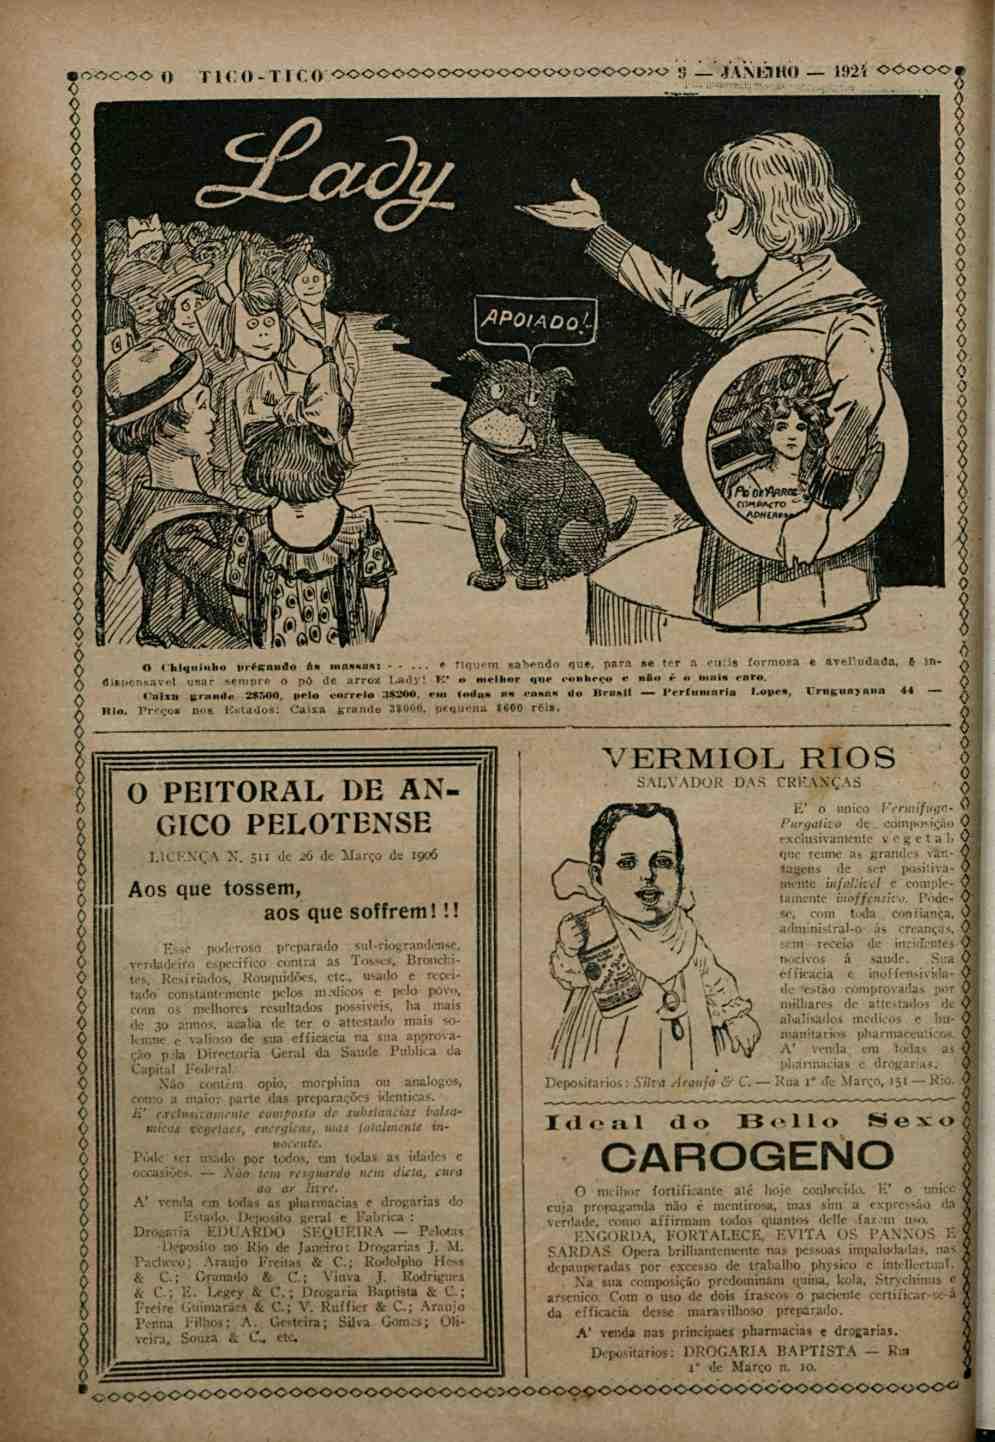 O Tico Toco Chiquinho Anno Xix Rio De Janeiro Quarta Feira 9 De Janeiro De 1924 N 953 Tres Inimigos Dos Meninos Pdf Free Download